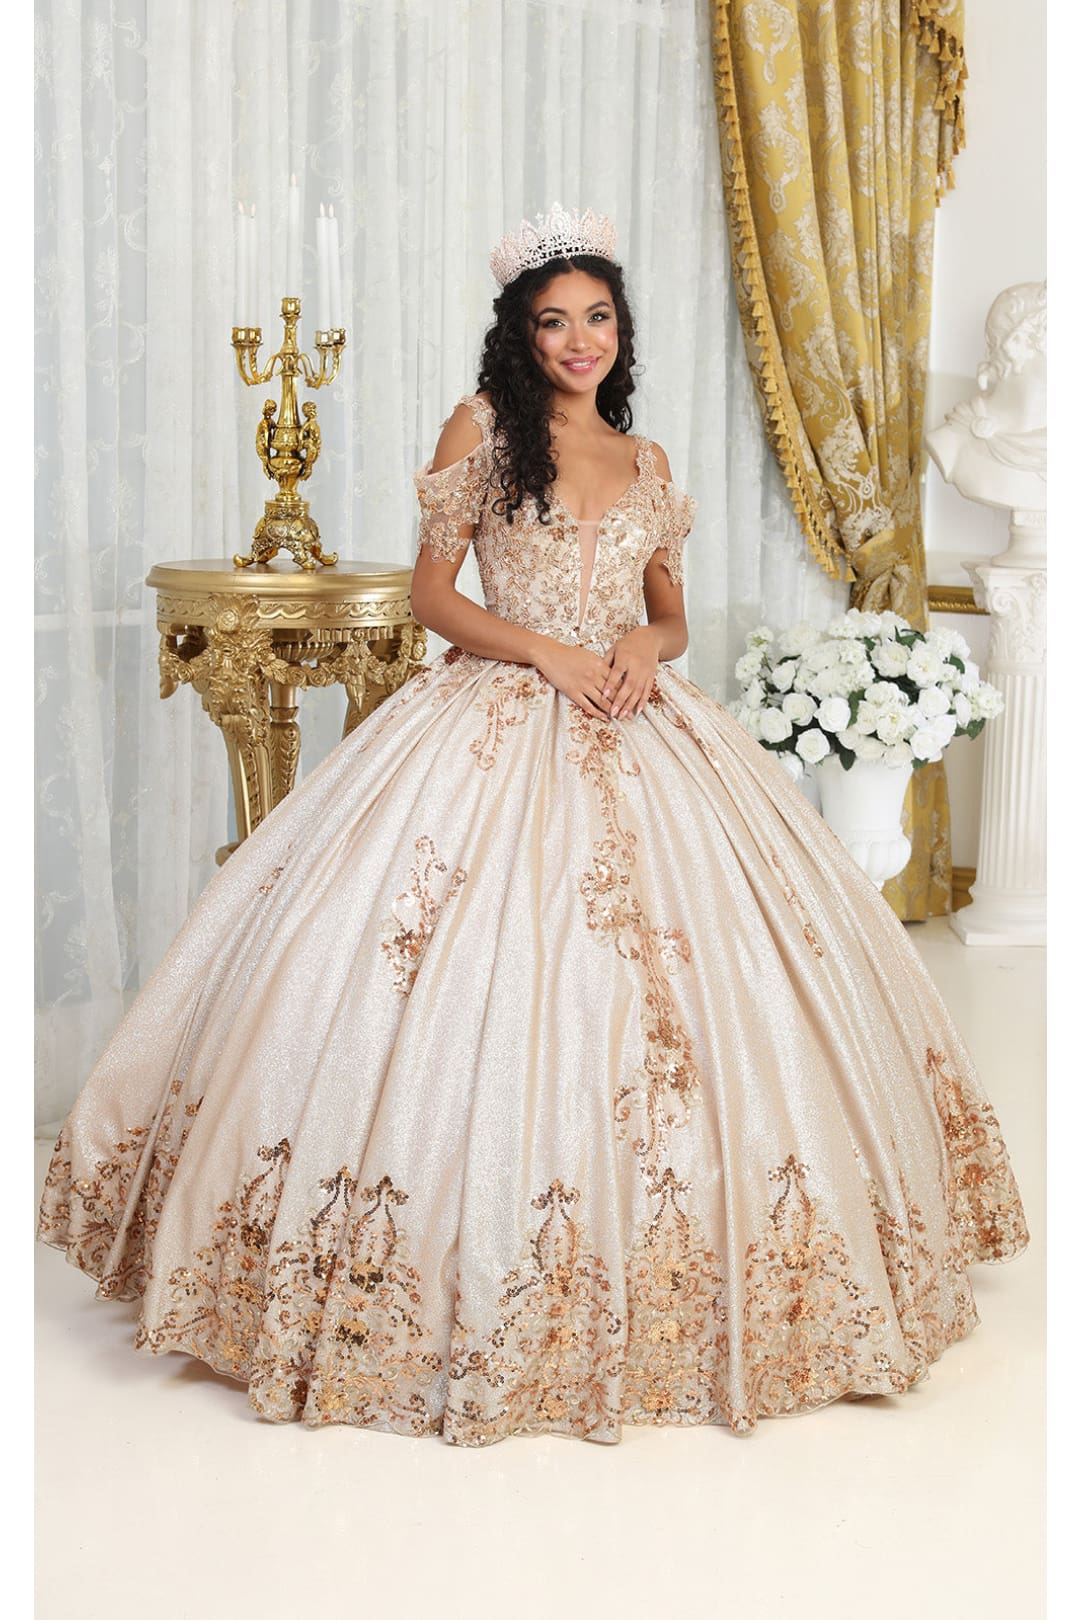 Layla K LK213 Cold Shoulder Lace Applique Rose Gold Quince Dress - ROSE GOLD / 4 - Dress